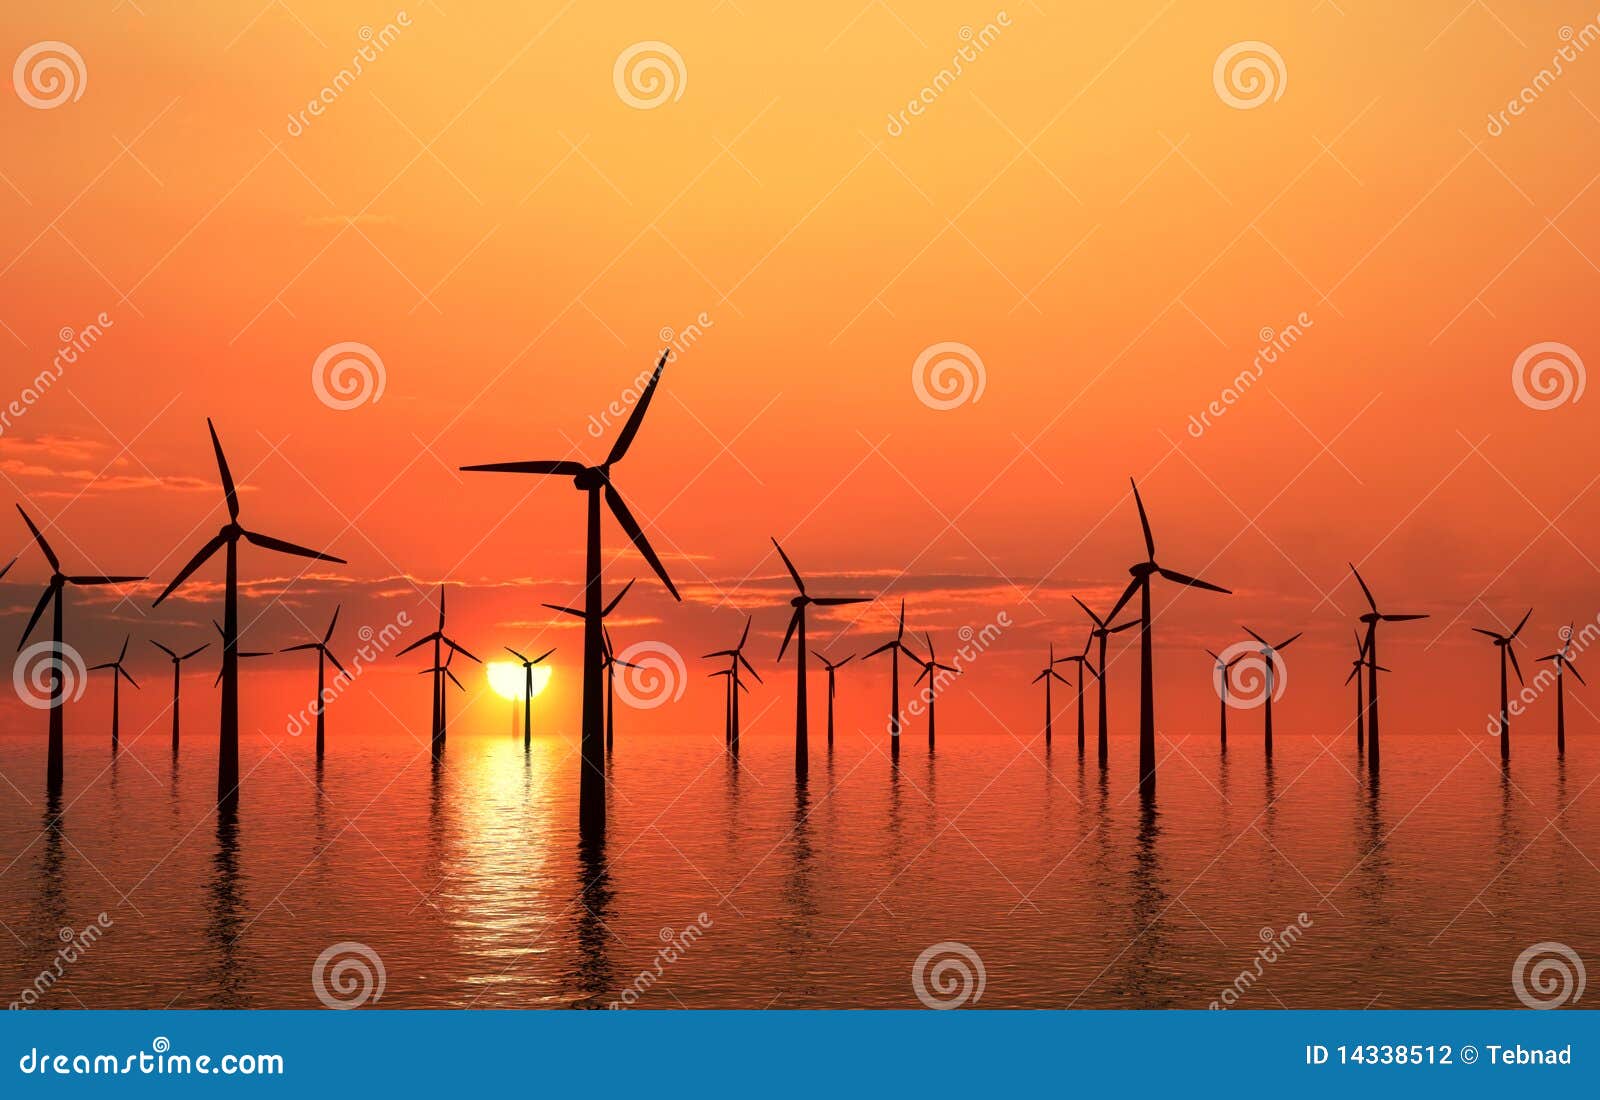 coastal wind turbines sunset